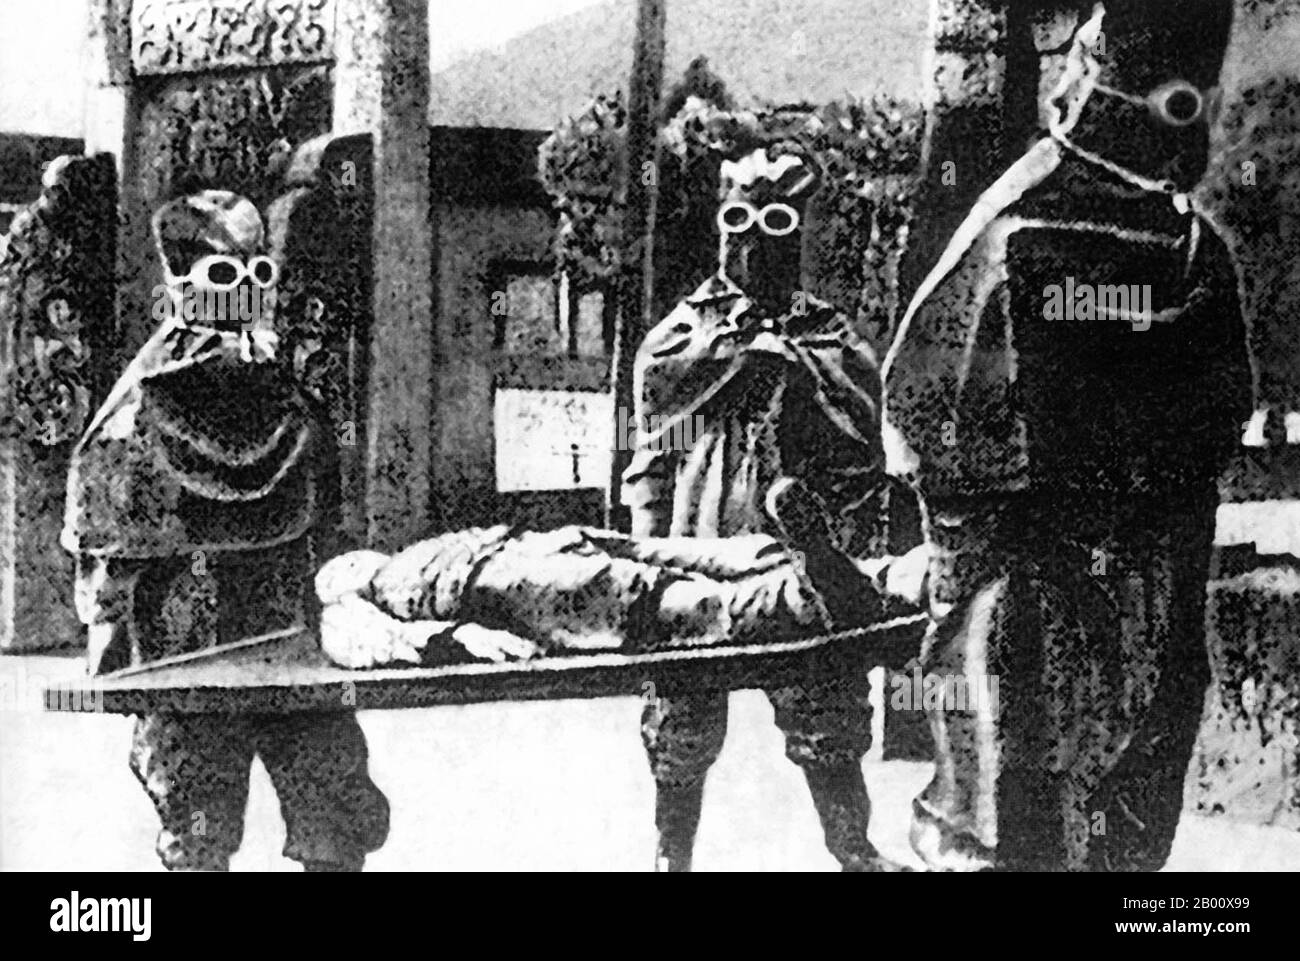 Chine : personnel japonais portant un cadavre à l'unité 731 dans le nord-est de la Chine (1937-1945). L'unité 731 était une unité secrète de recherche et de développement sur la guerre biologique et chimique de l'Armée impériale japonaise qui a entrepris des expérimentations humaines mortelles pendant la Seconde Guerre sino-japonaise (1937-1945) et la Seconde Guerre mondiale Il est responsable de certains des crimes de guerre les plus notoires commis par le personnel japonais. L'unité 731 était le nom de code d'une unité de l'Armée impériale japonaise officiellement connue sous le nom de département de prévention des épidémies et de purification de l'eau de l'Armée Kwantung. Banque D'Images